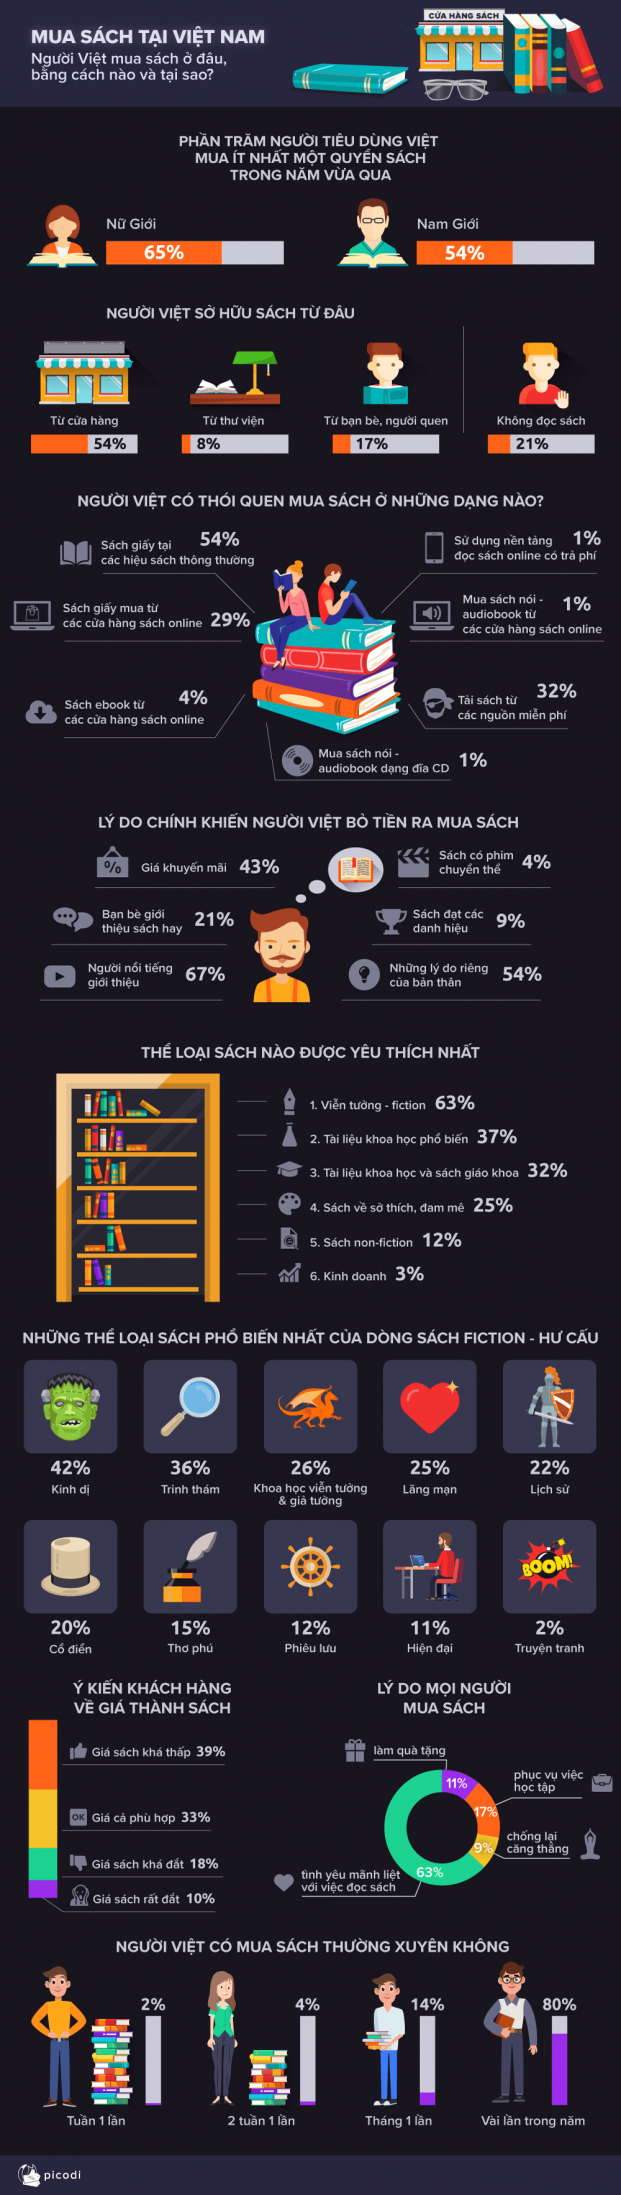 Thói quen đọc sách của người Việt: 54% vẫn mua ở hiệu sách, nữ mua nhiều hơn nam 0